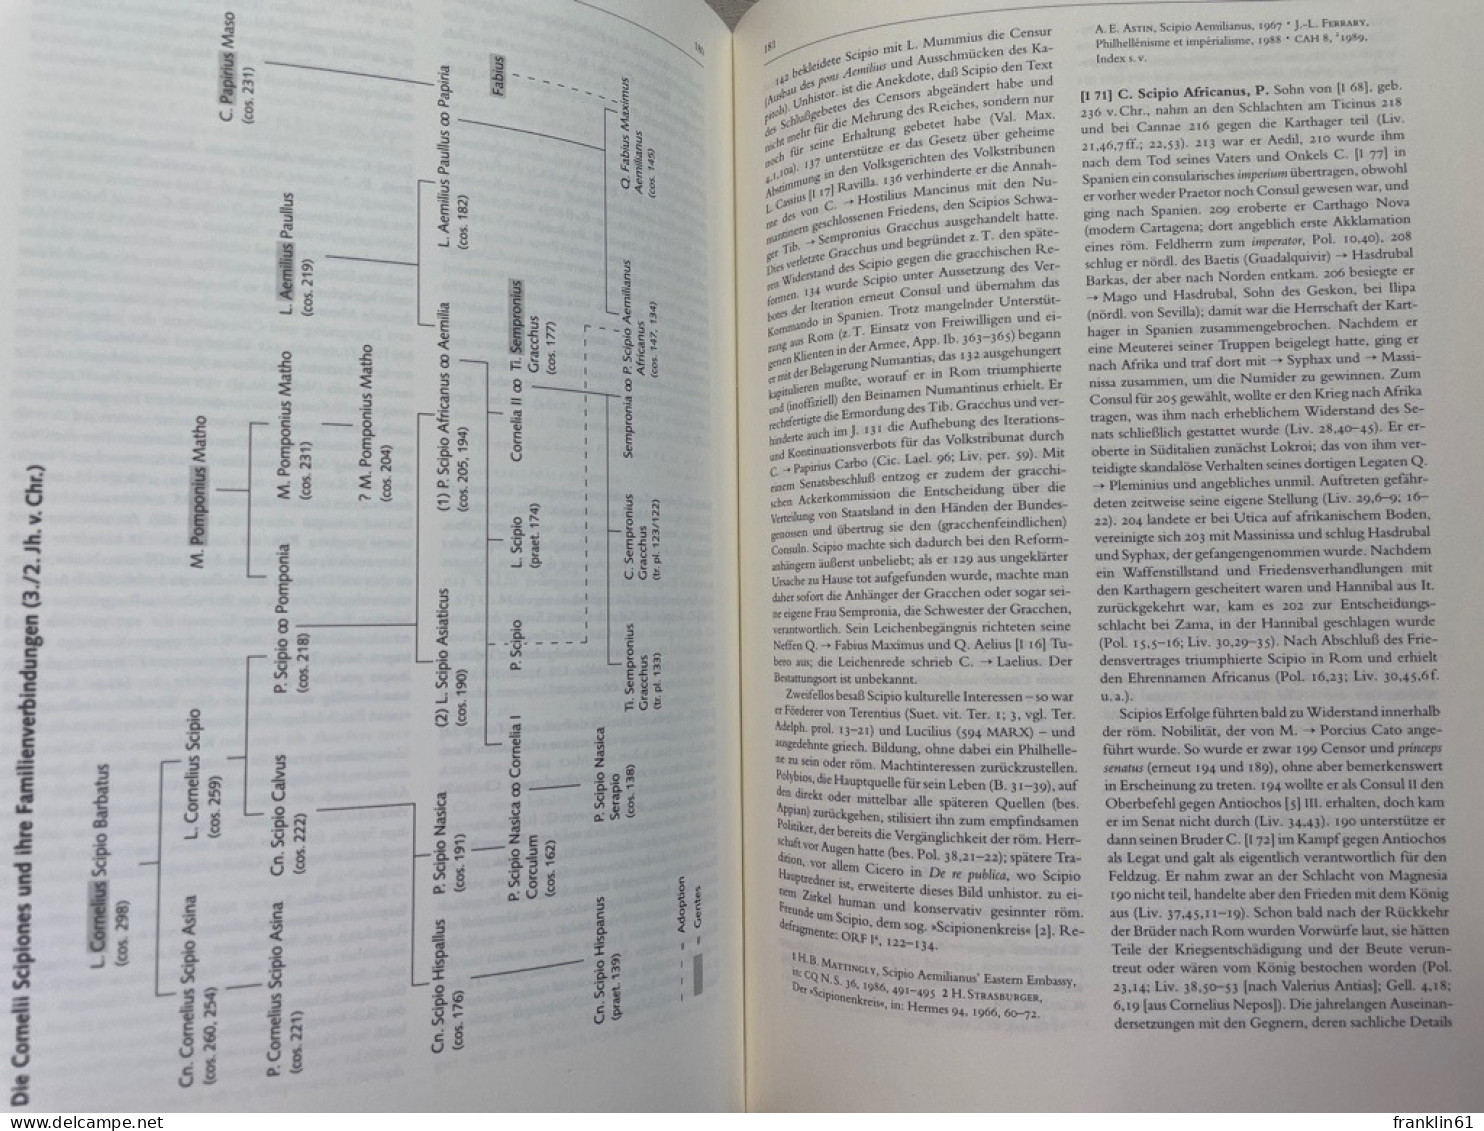 Der Neue Pauly. Enzyklopädie der Antike - Gesamtwerk. 17 Bände in 20 Teilbänden. Incl. Atlasband